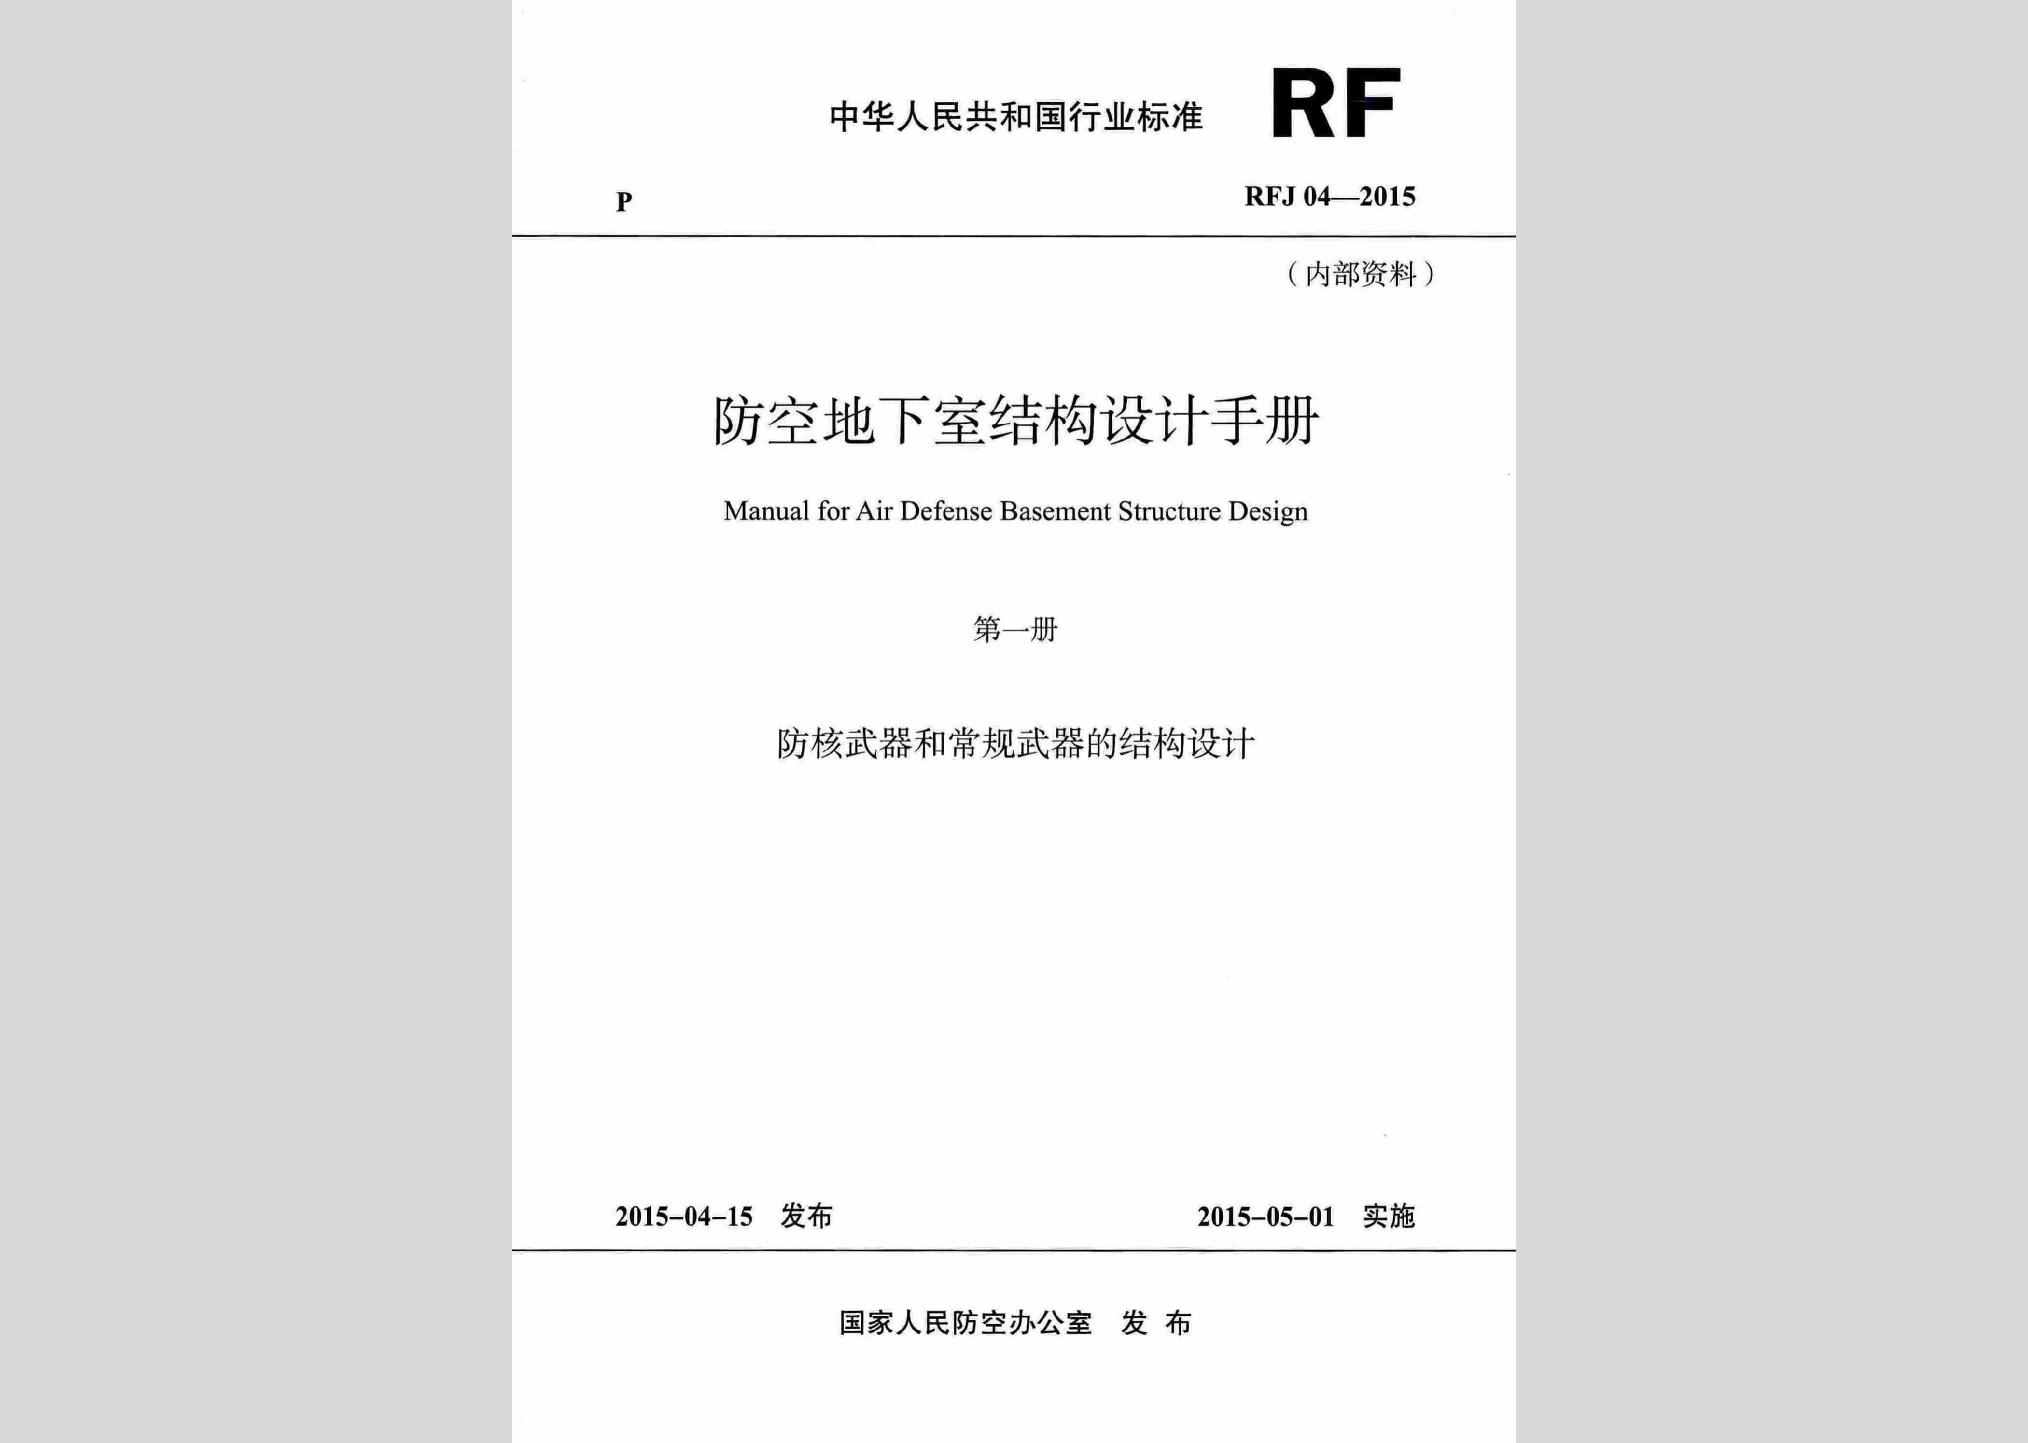 RFJ04-2015-1：防空地下室结构设计手册(第一册)